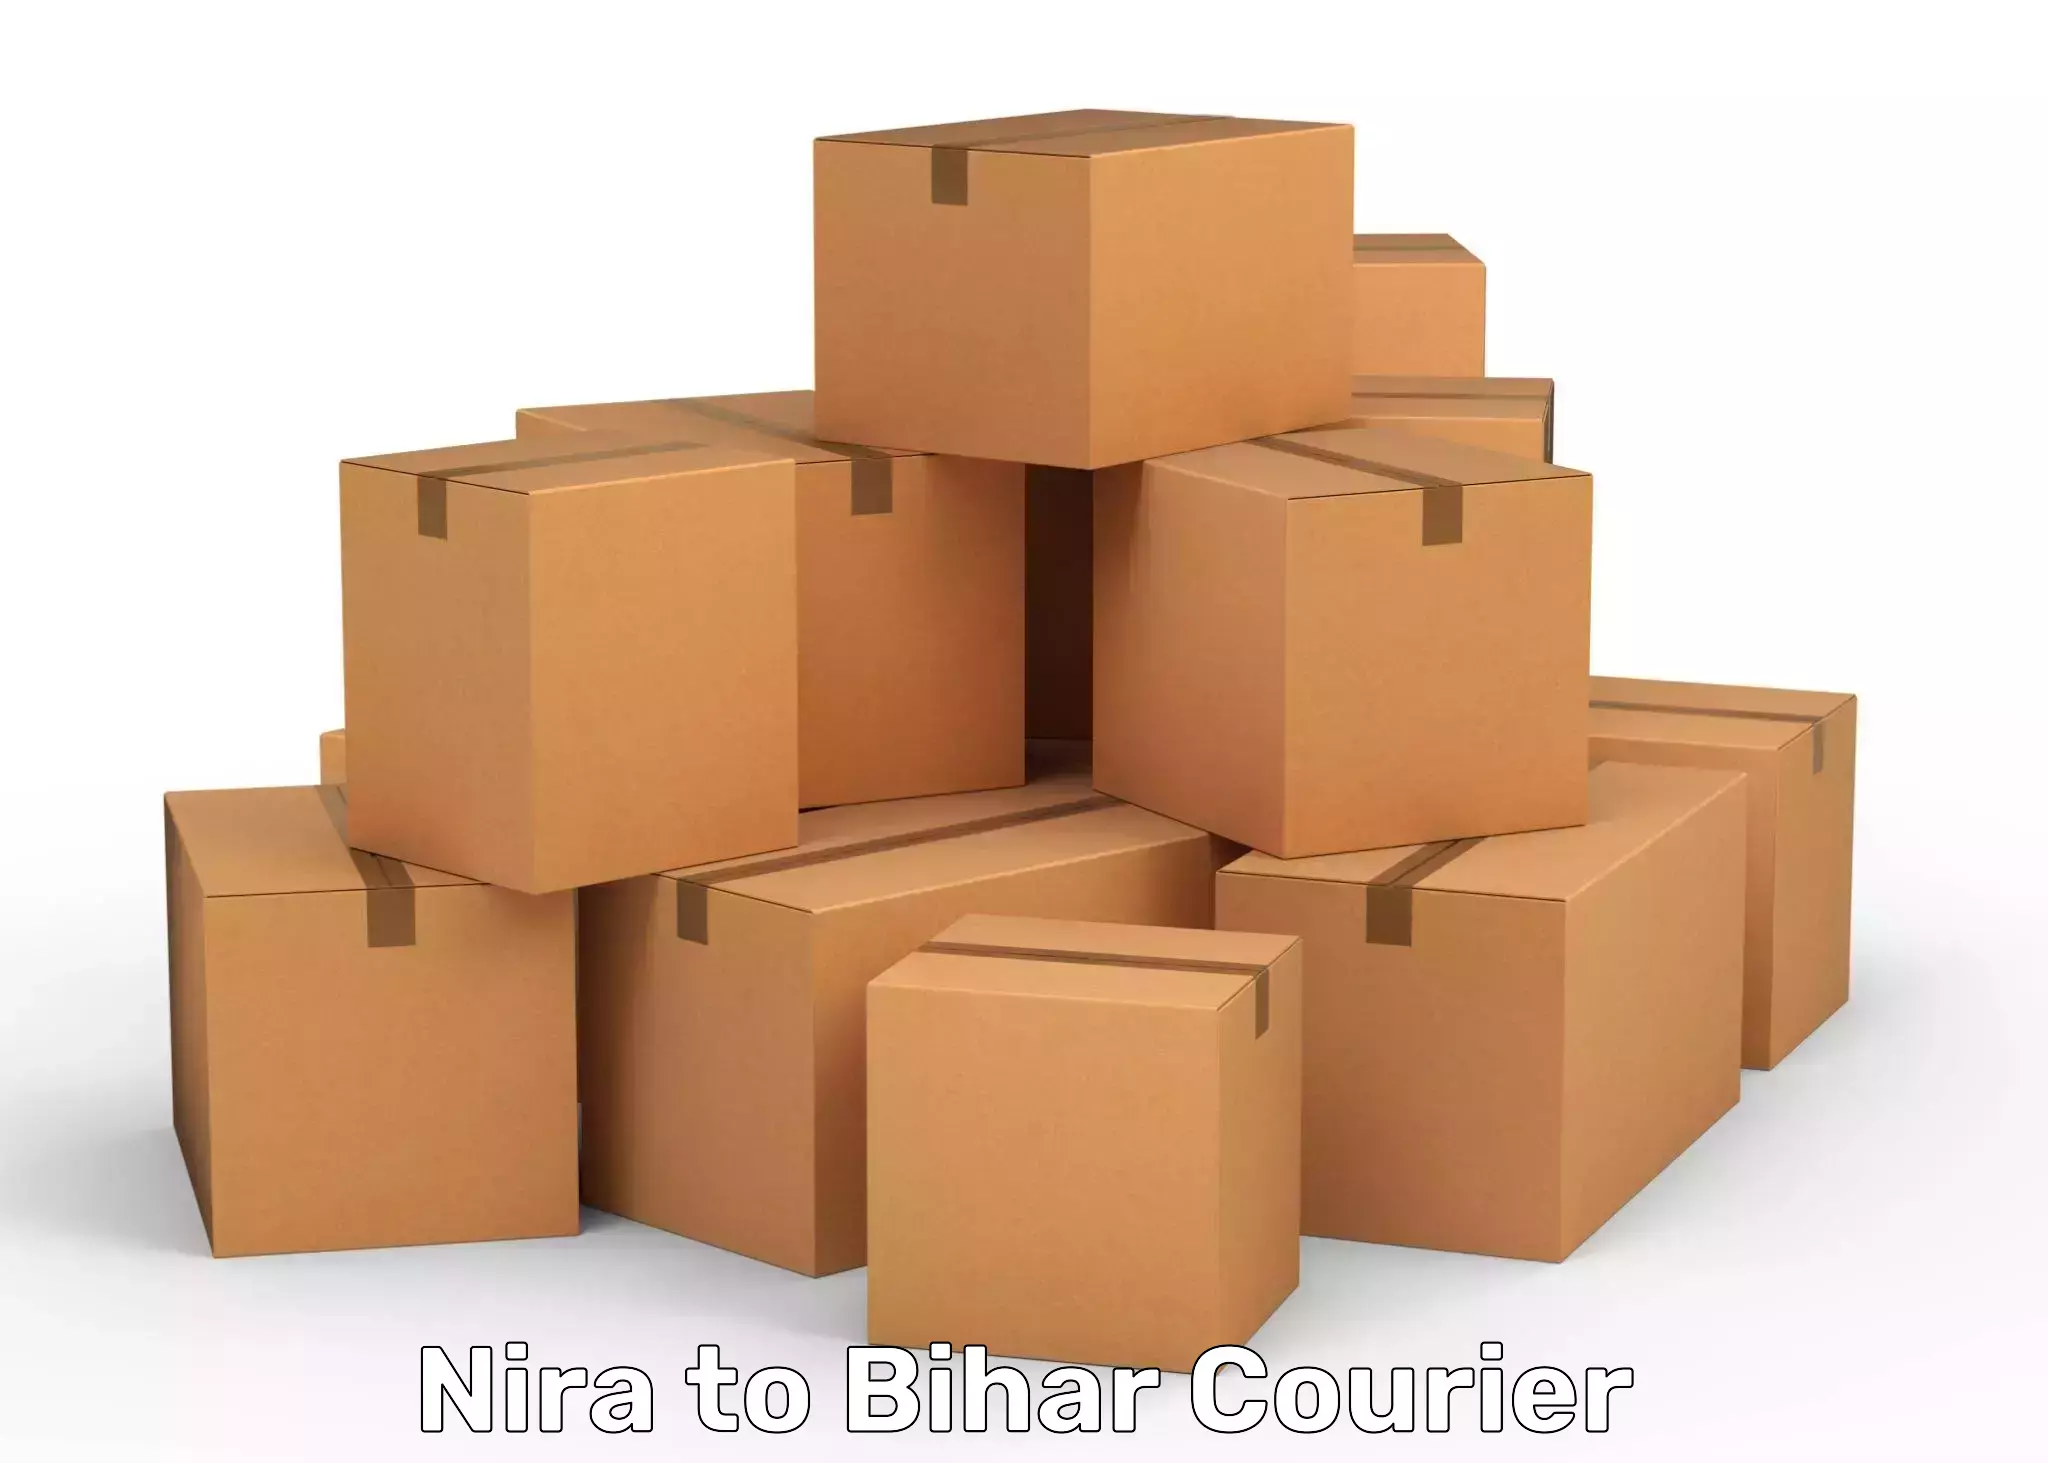 Courier service comparison Nira to Hazrat Jandaha